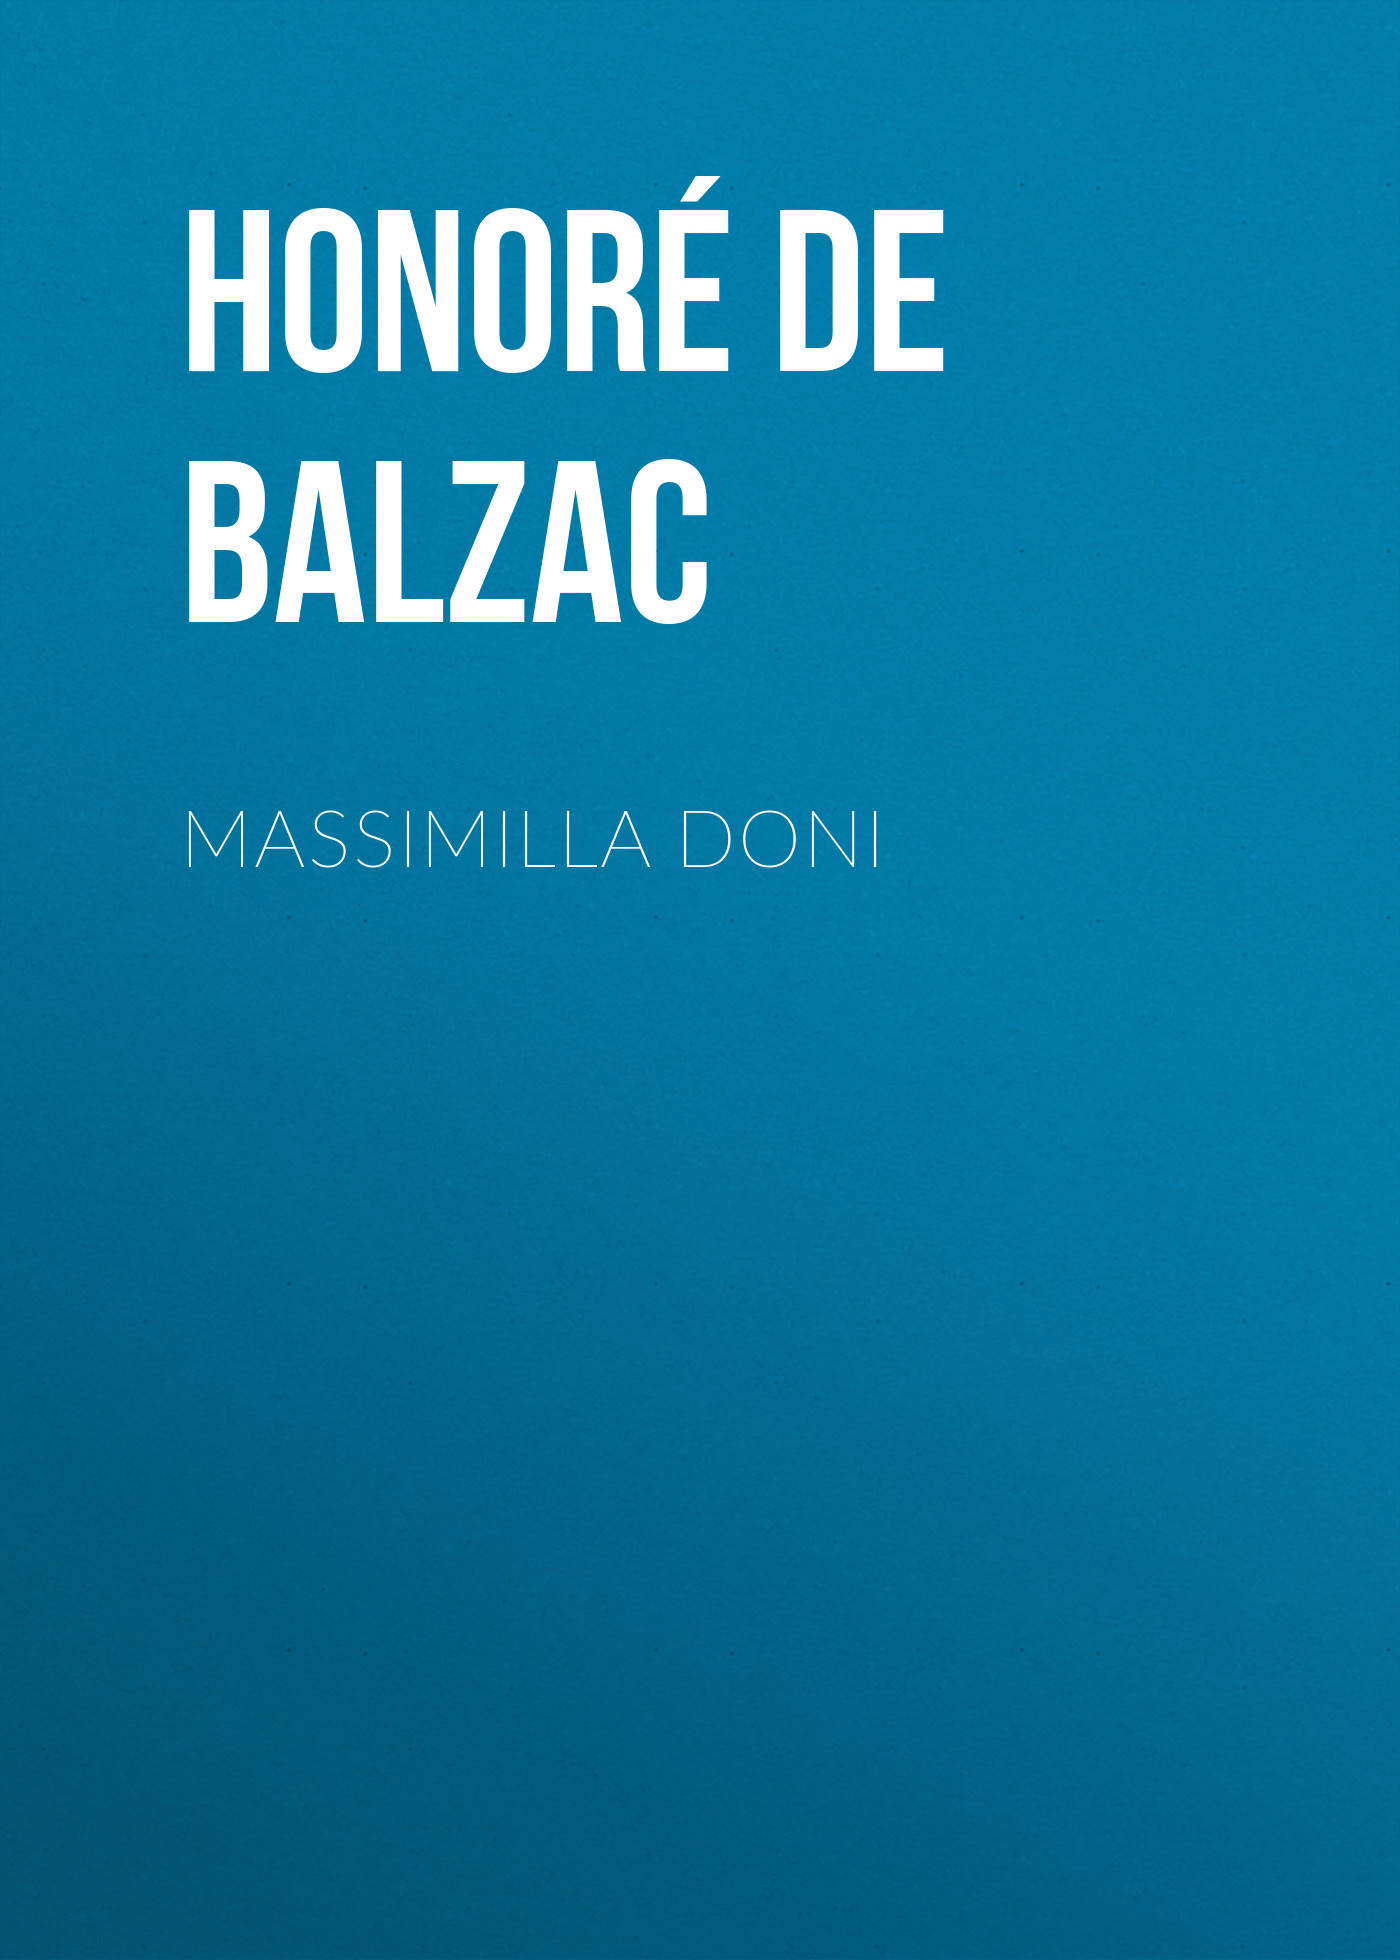 Книга Massimilla Doni из серии , созданная Honoré Balzac, может относится к жанру Литература 19 века, Зарубежная старинная литература, Зарубежная классика. Стоимость электронной книги Massimilla Doni с идентификатором 25020667 составляет 0 руб.